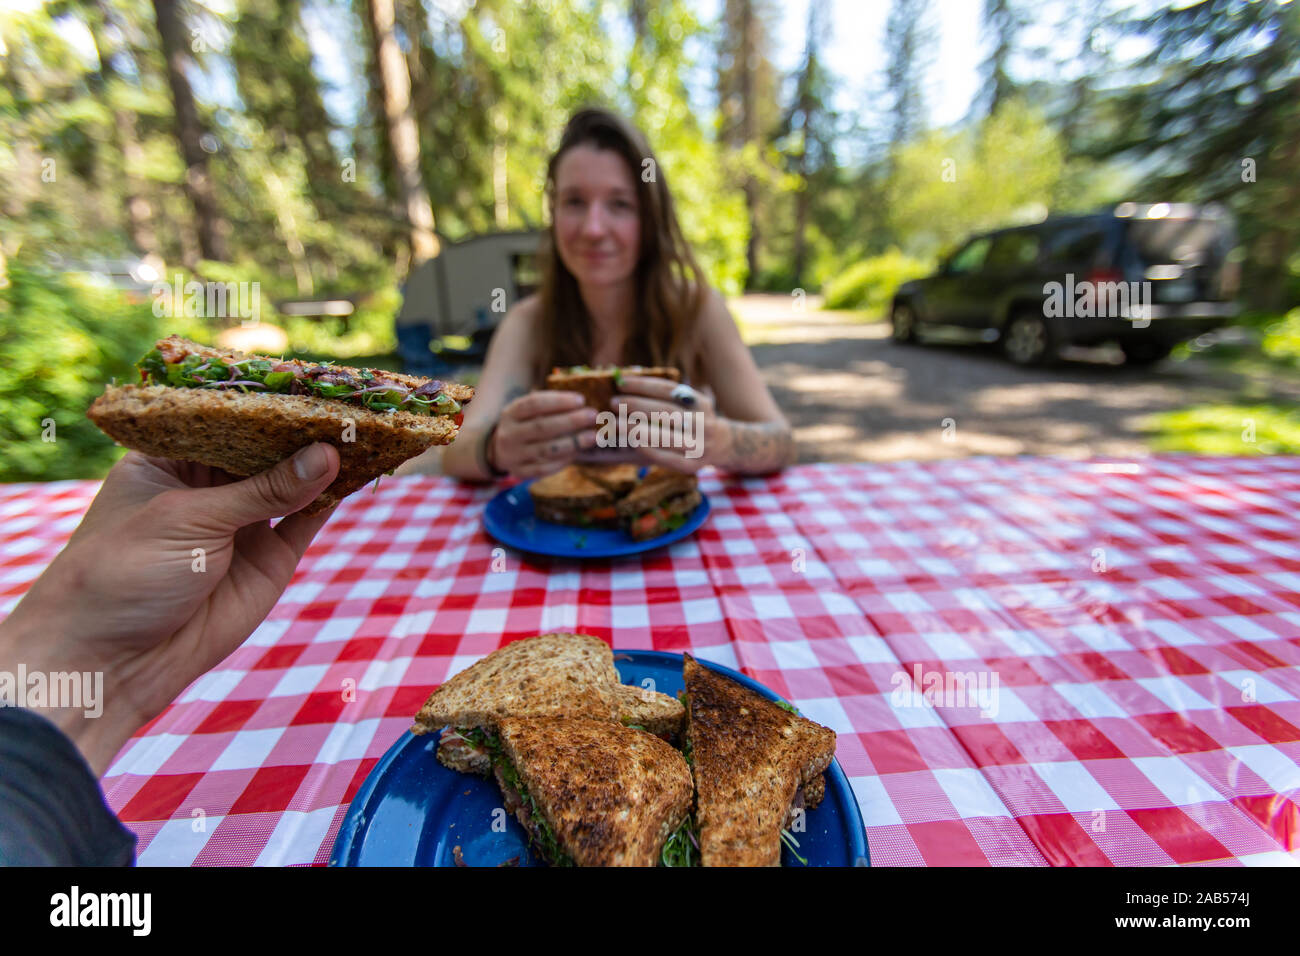 Selektiver Fokus von zwei erwachsenen Personen draußen sitzen an einem Picknicktisch in einem Natur Umwelt essen einige köstliche hausgemachte Sandwiches Stockfoto